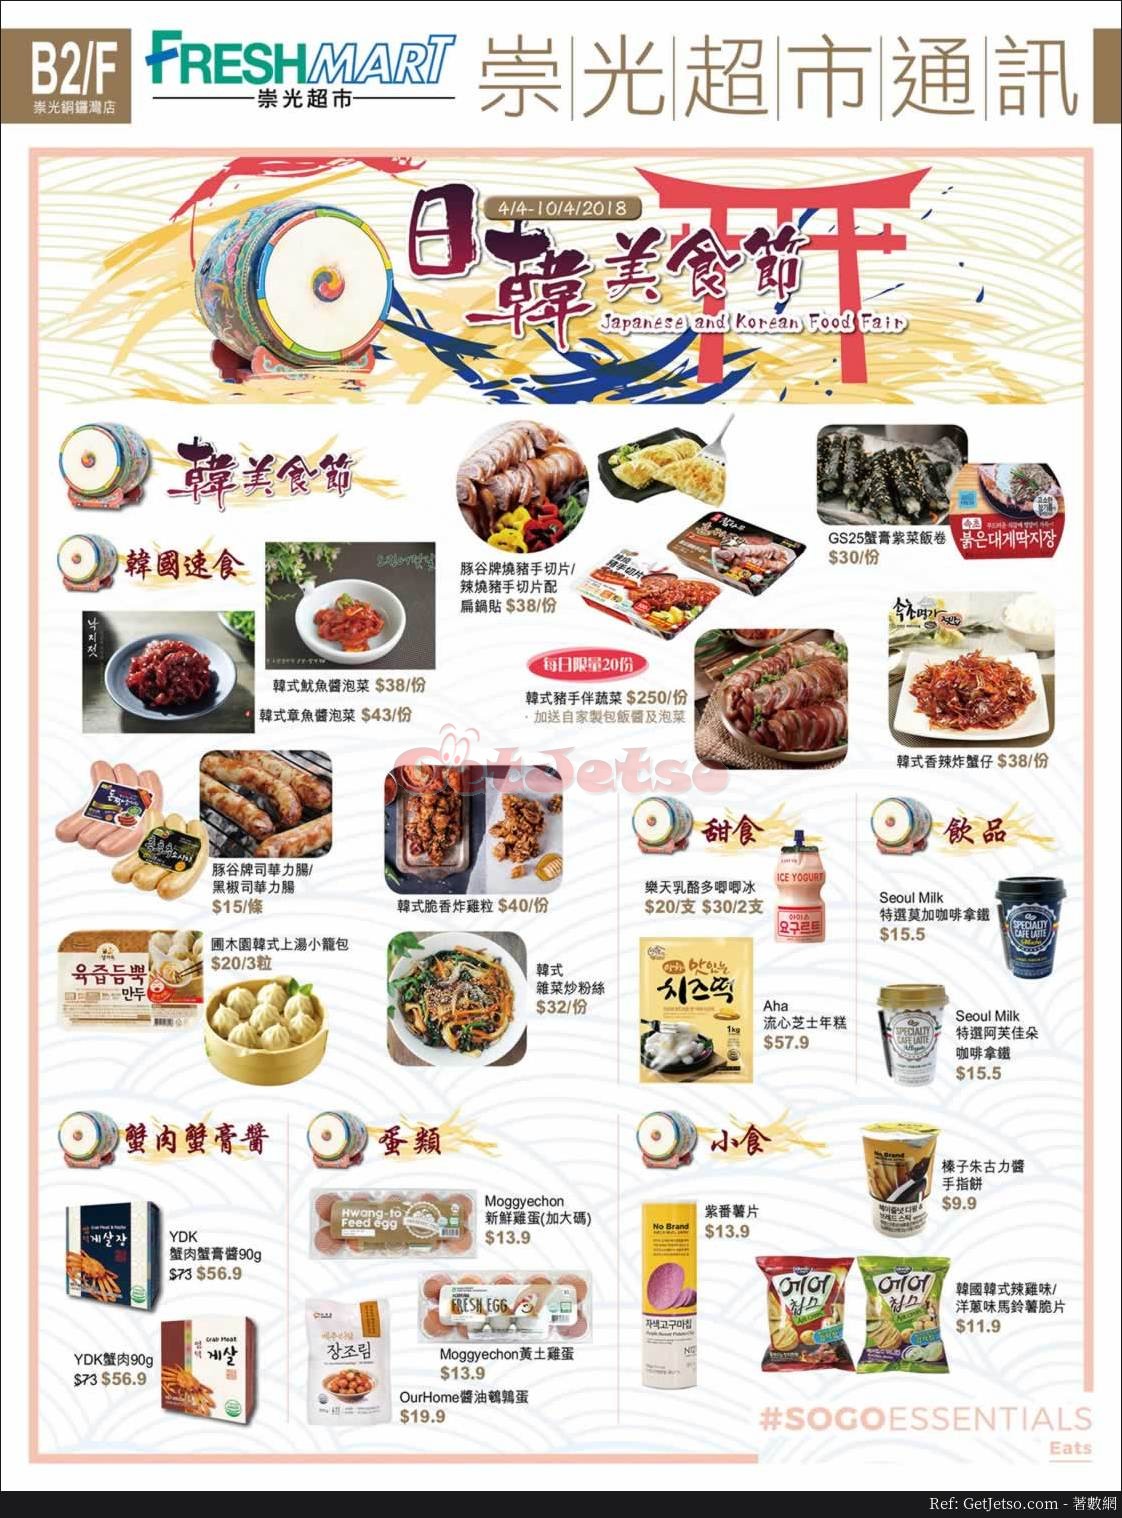 崇光超市日韓美食節優惠(至18年4月10日)圖片1